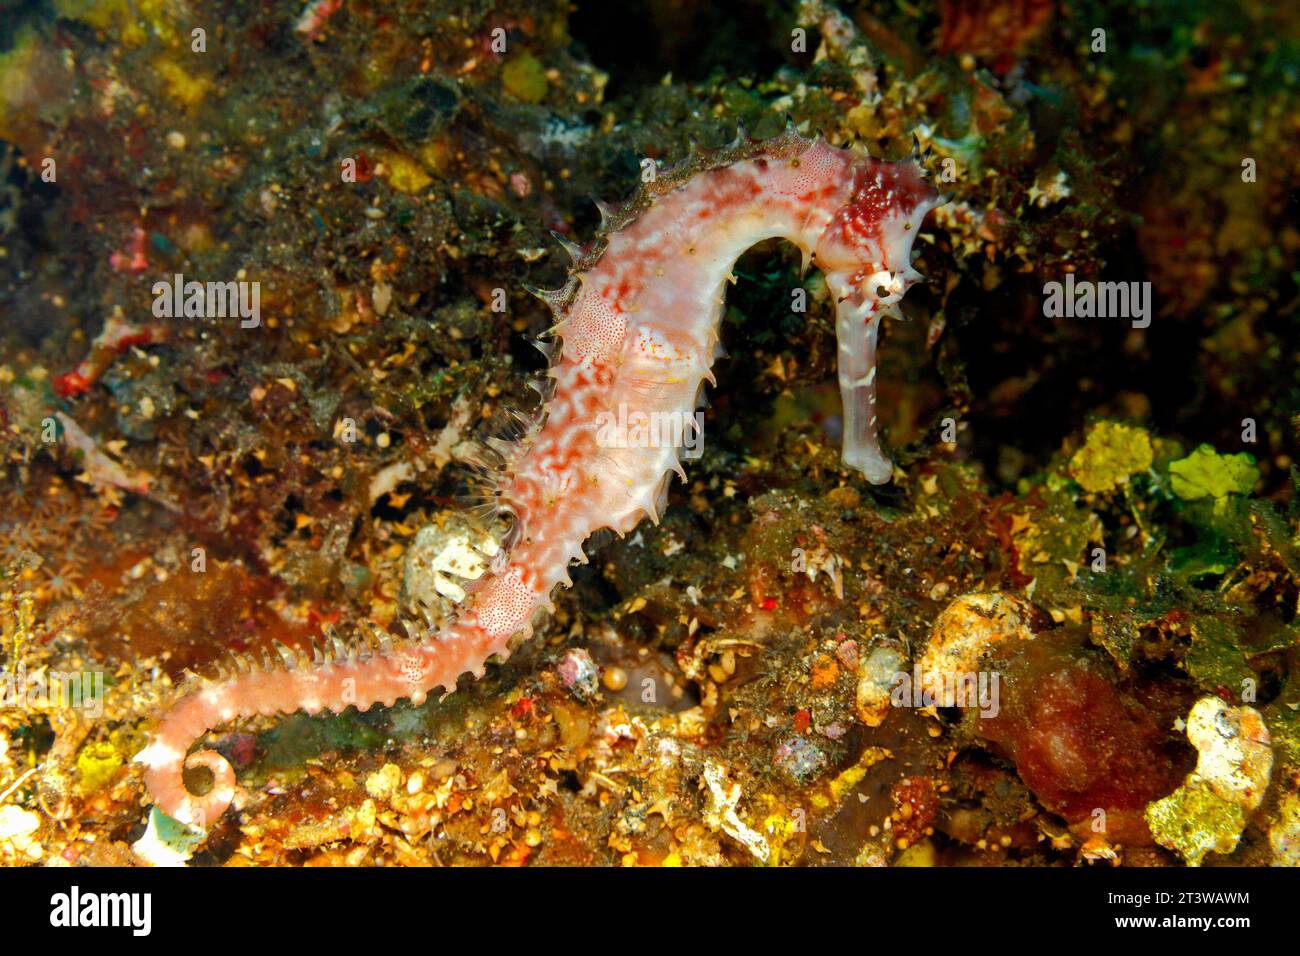 Thorny Seahorse, également connu sous le nom de Spiny Seahorse, hippocampe histrix, nageant sur le récif sous l'eau, à la recherche de nourriture. Tulamben, Bali, Indonésie. Banque D'Images